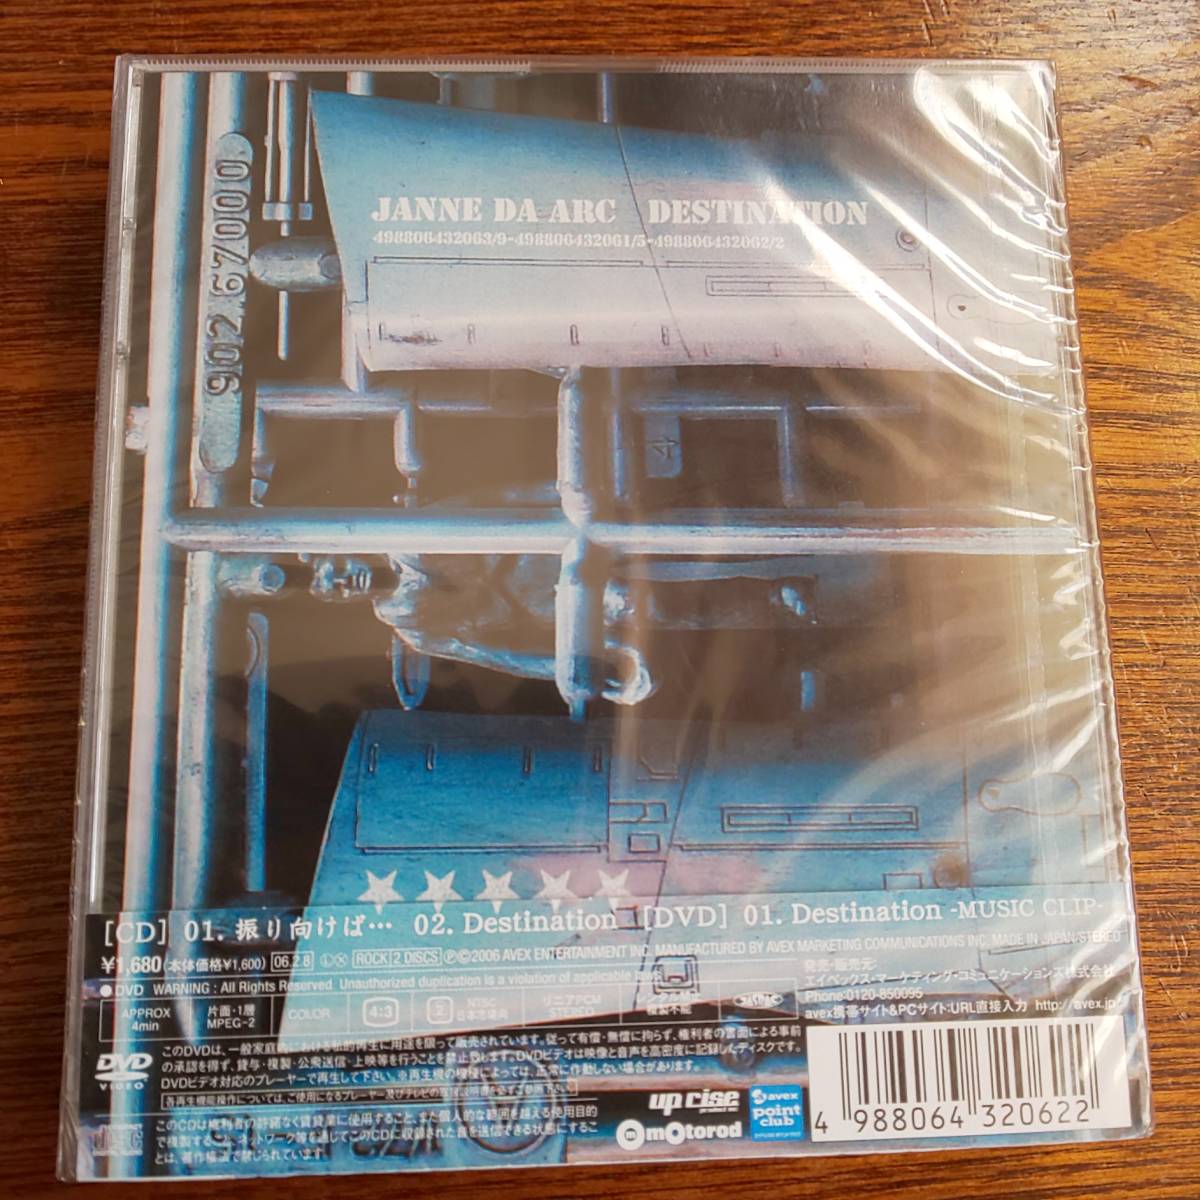 Janne Da Arc/.. предназначенный ..../Destination AVCD-32062/B CD+DVD новый товар нераспечатанный включая доставку 